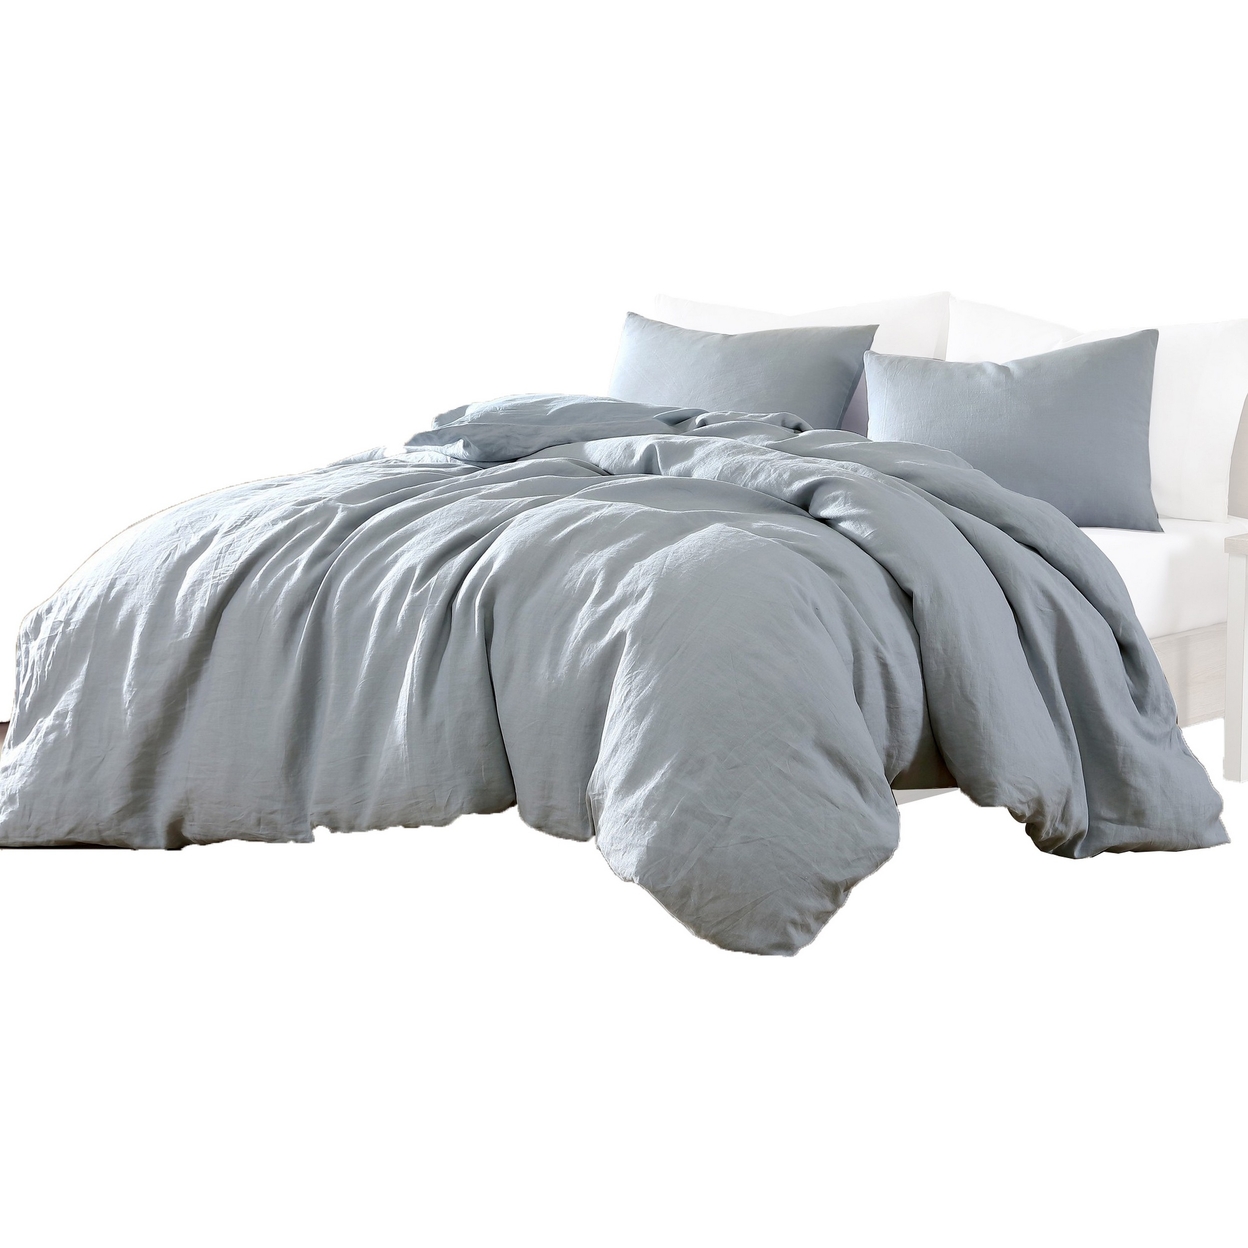 Edge 4 Piece Queen Size Duvet Comforter Set, Washed Linen, Light Blue - Saltoro Sherpi